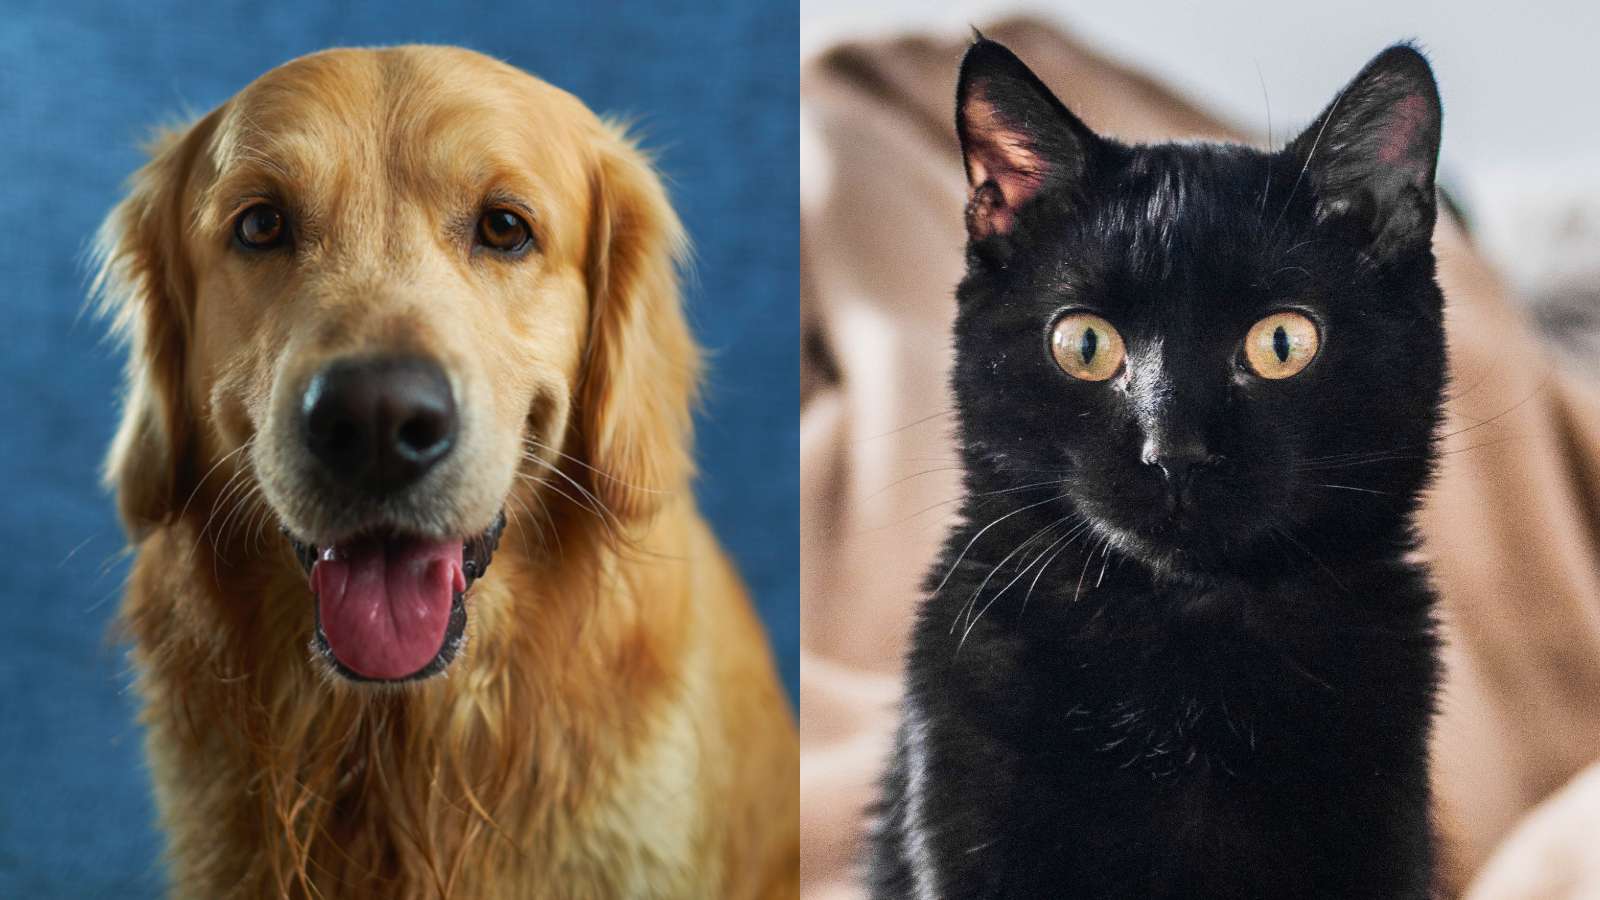 Golden Retriever next to a black cat